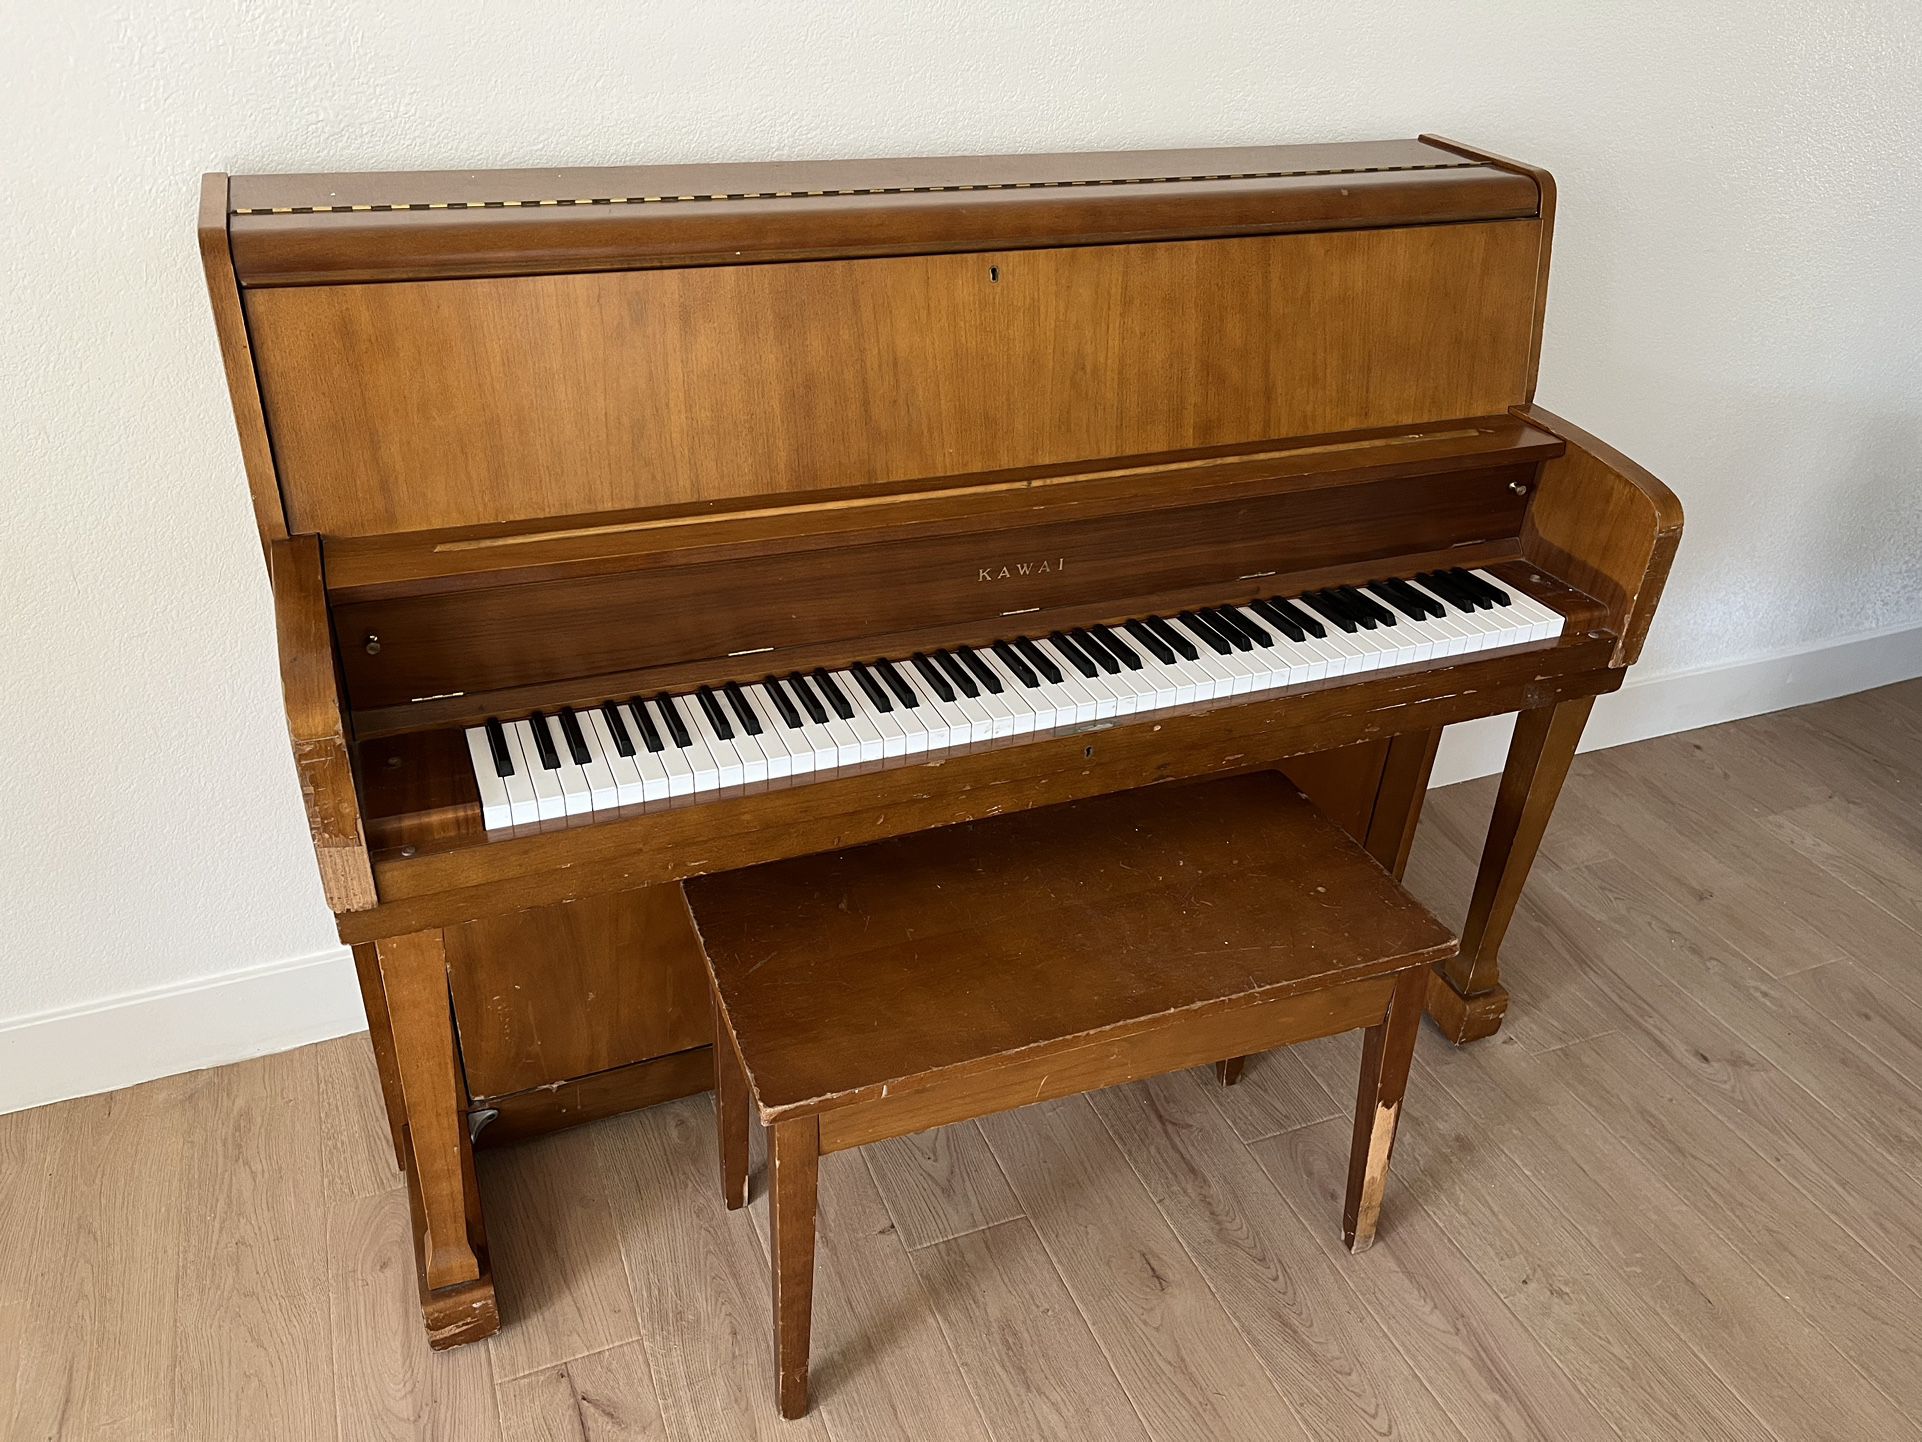 Kawai Piano For Sale